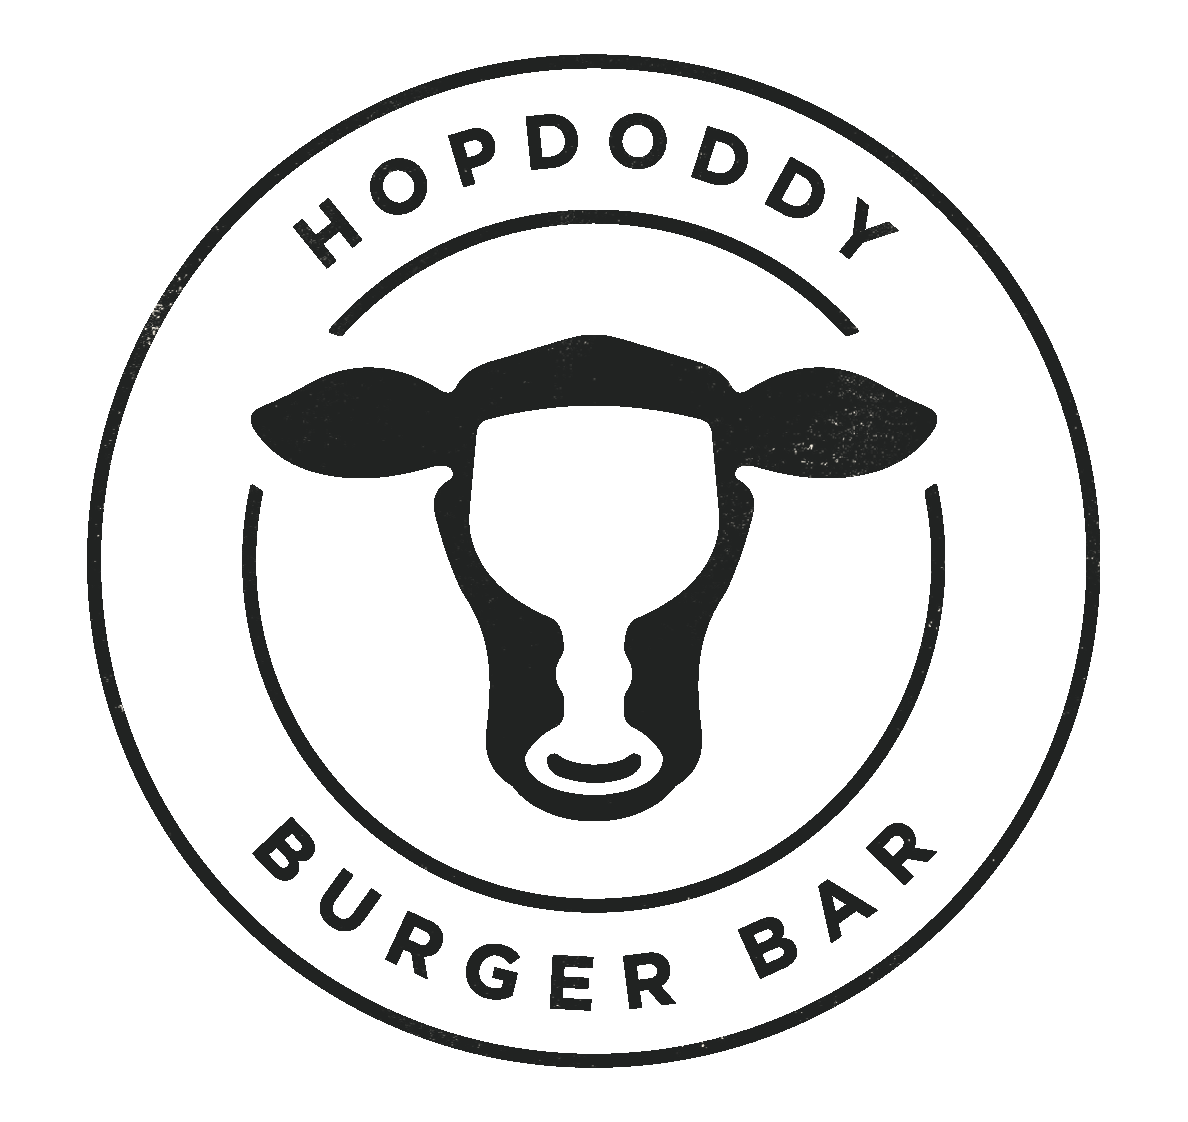 Hopdoddy Logo - Arizona Beer Week 2019. Hopdoddy Burger Bar